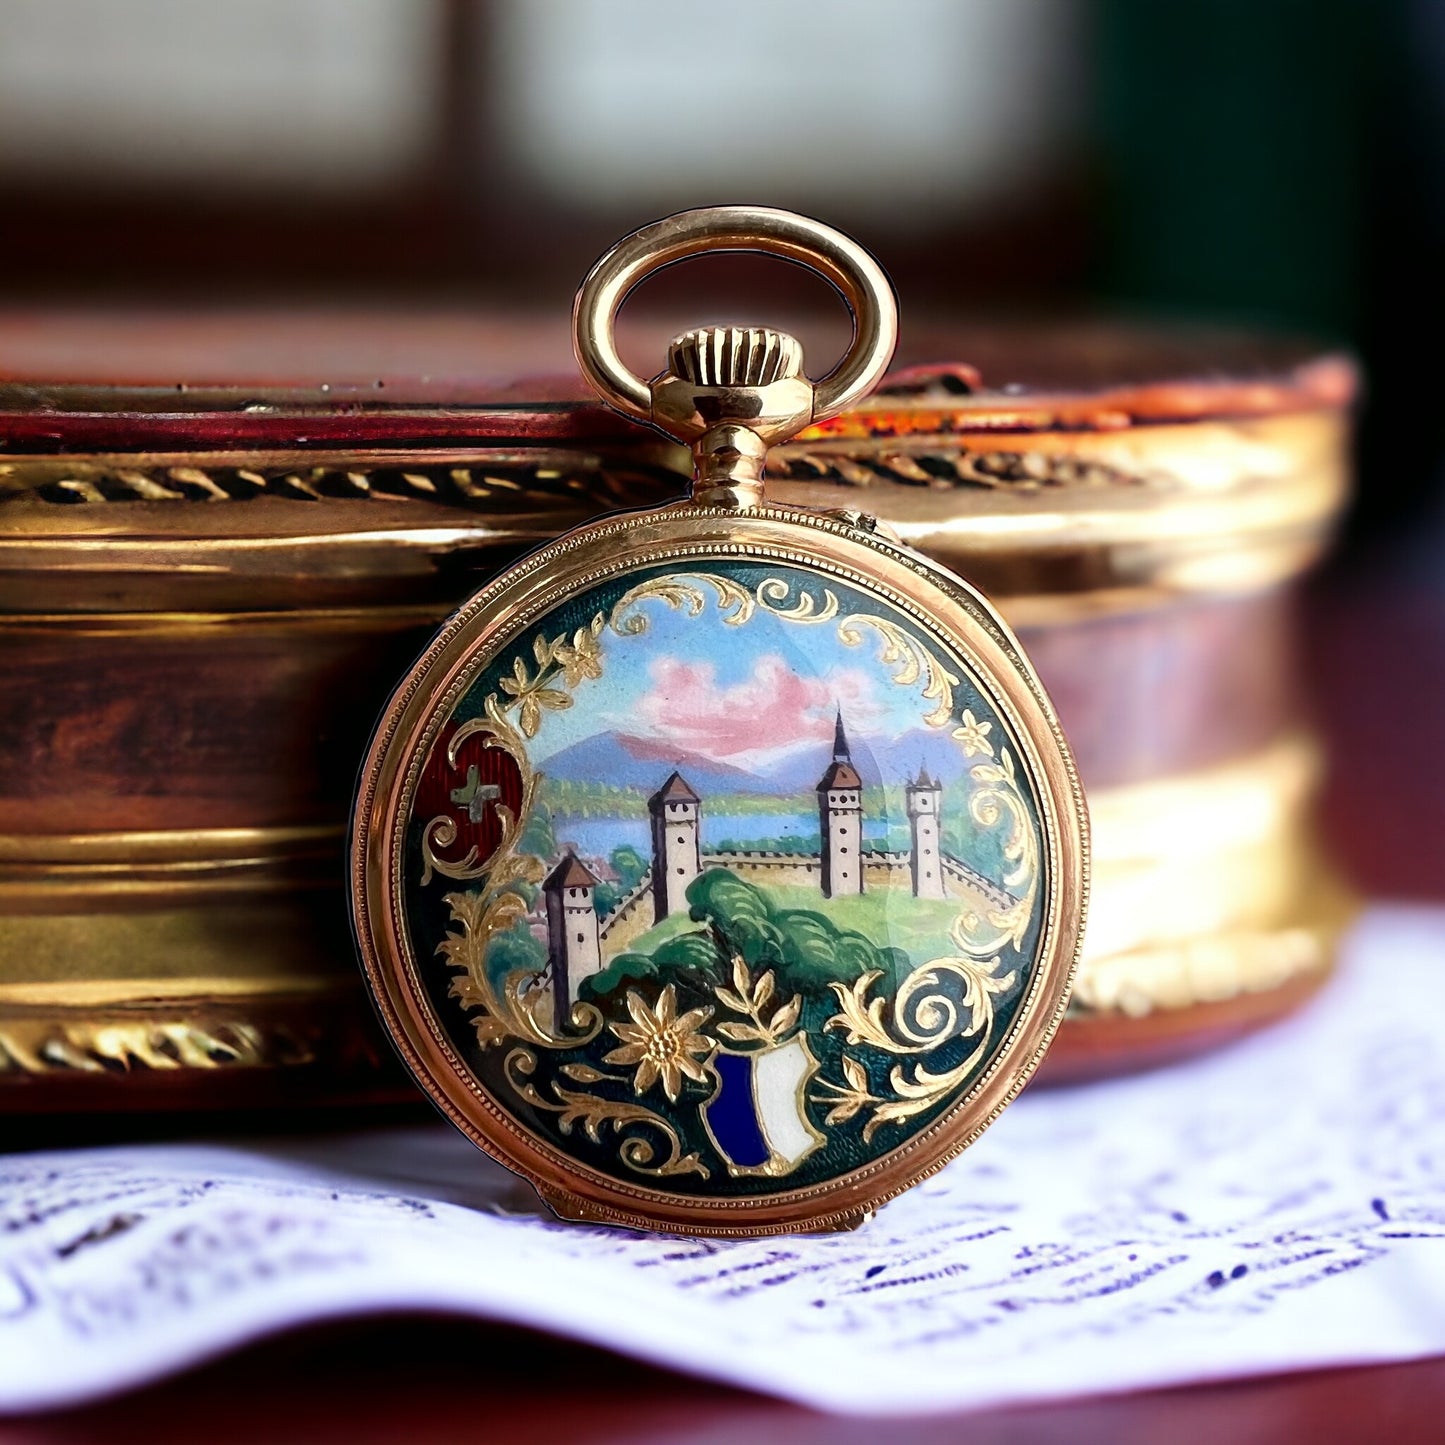 Vacheron Constantin 18k Gold Pendant & Pocket Watch Taschenuhr / Montre de poche Handpainted year 1901